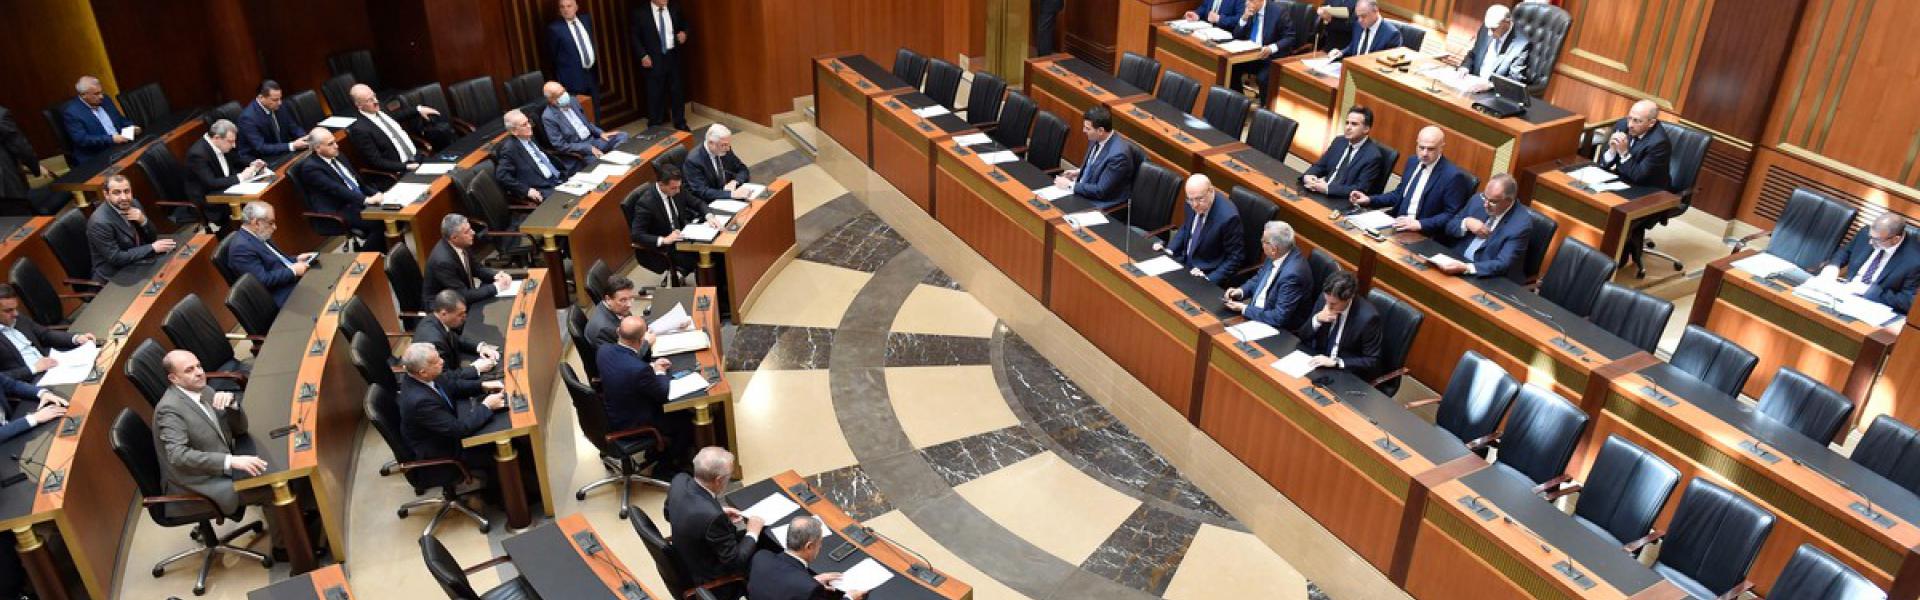 مجلس النواب اللبناني يبرر قرار إرجاء الانتخابات البلدية بالوضع في الجنوب 